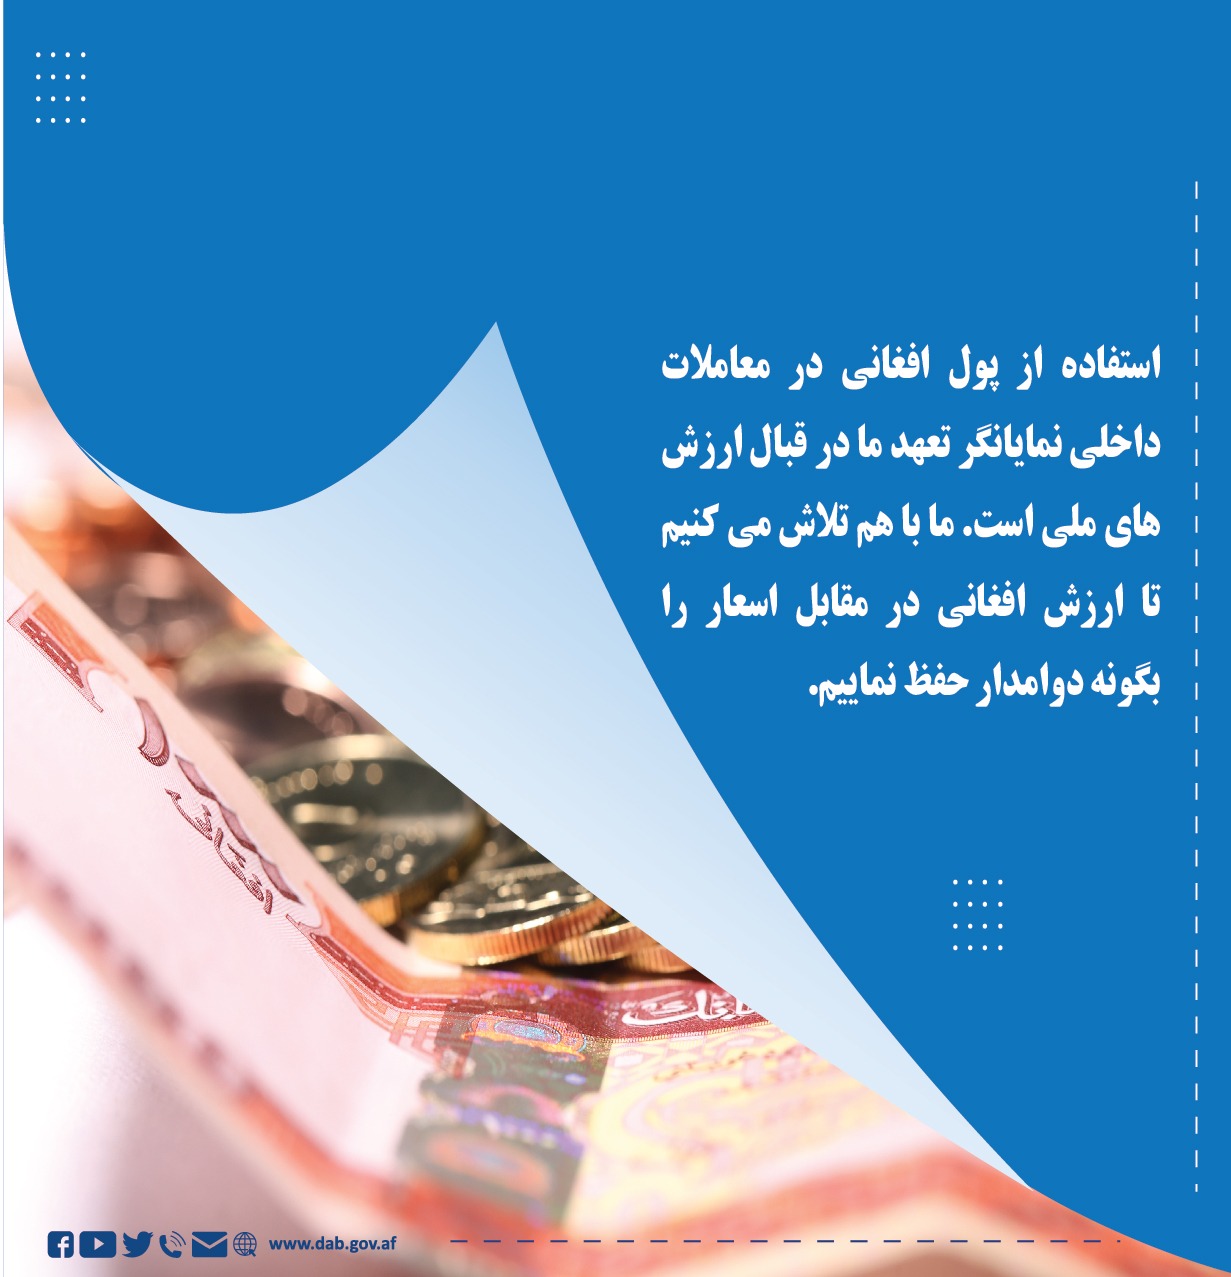 استفاده از پول افغانی در معاملات داخلی نمایانگر تعهد ما در قبال ارزش های مالی است